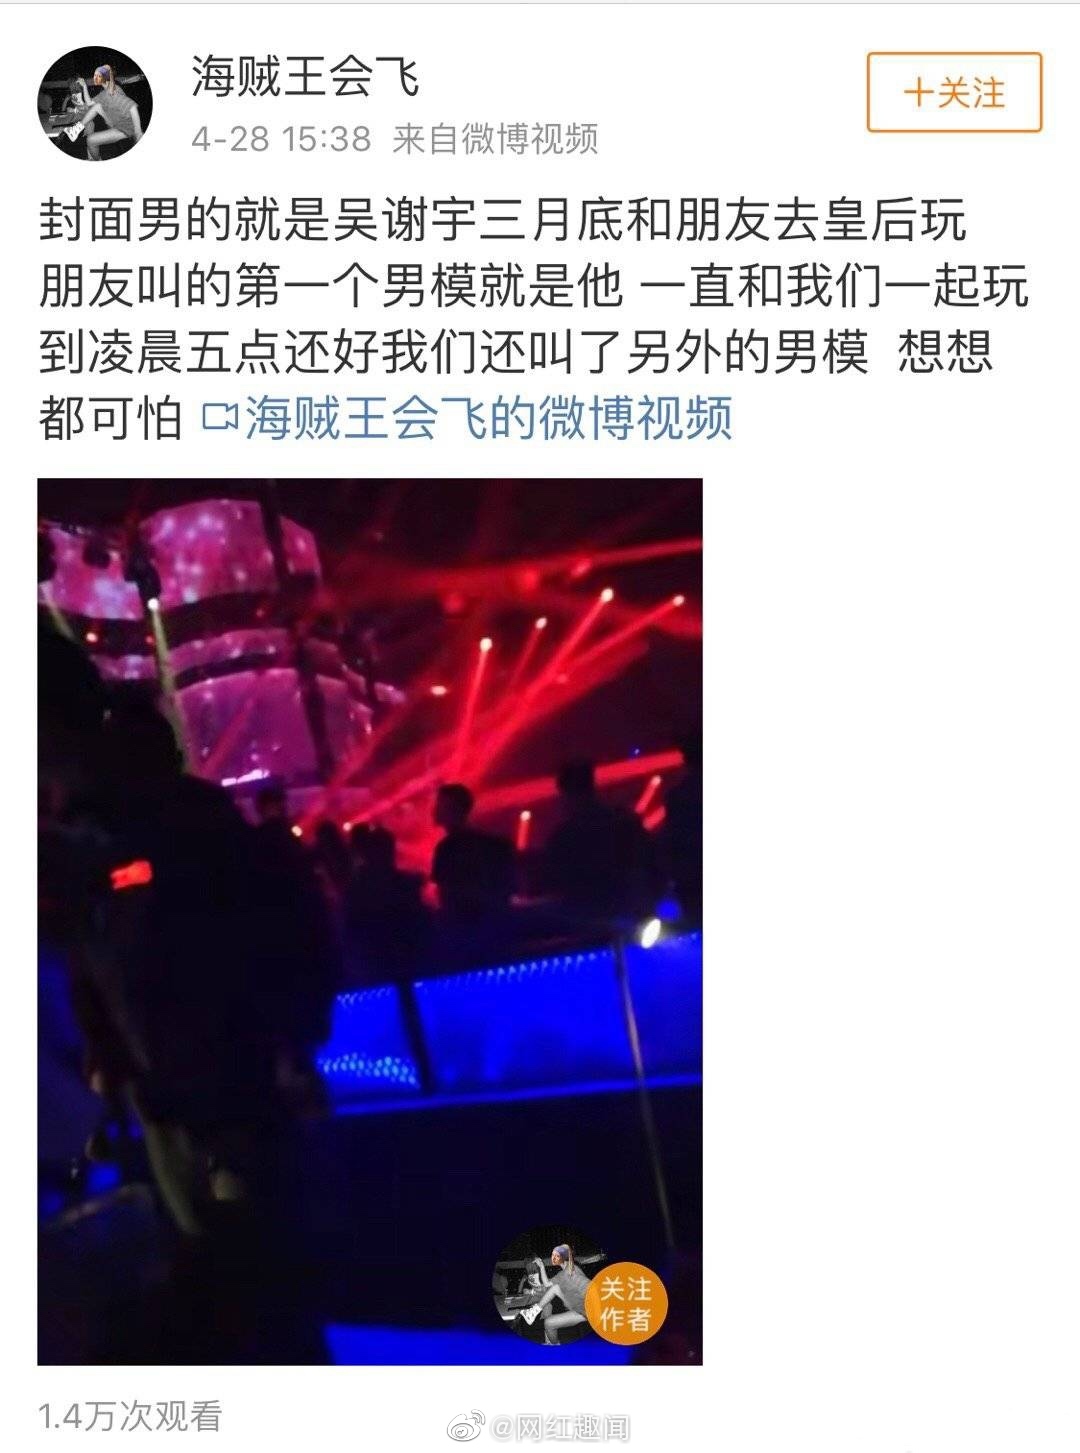 吴谢宇疑似酒吧陪酒的视频曝光。警方初审8小时，不否认杀母避谈细节